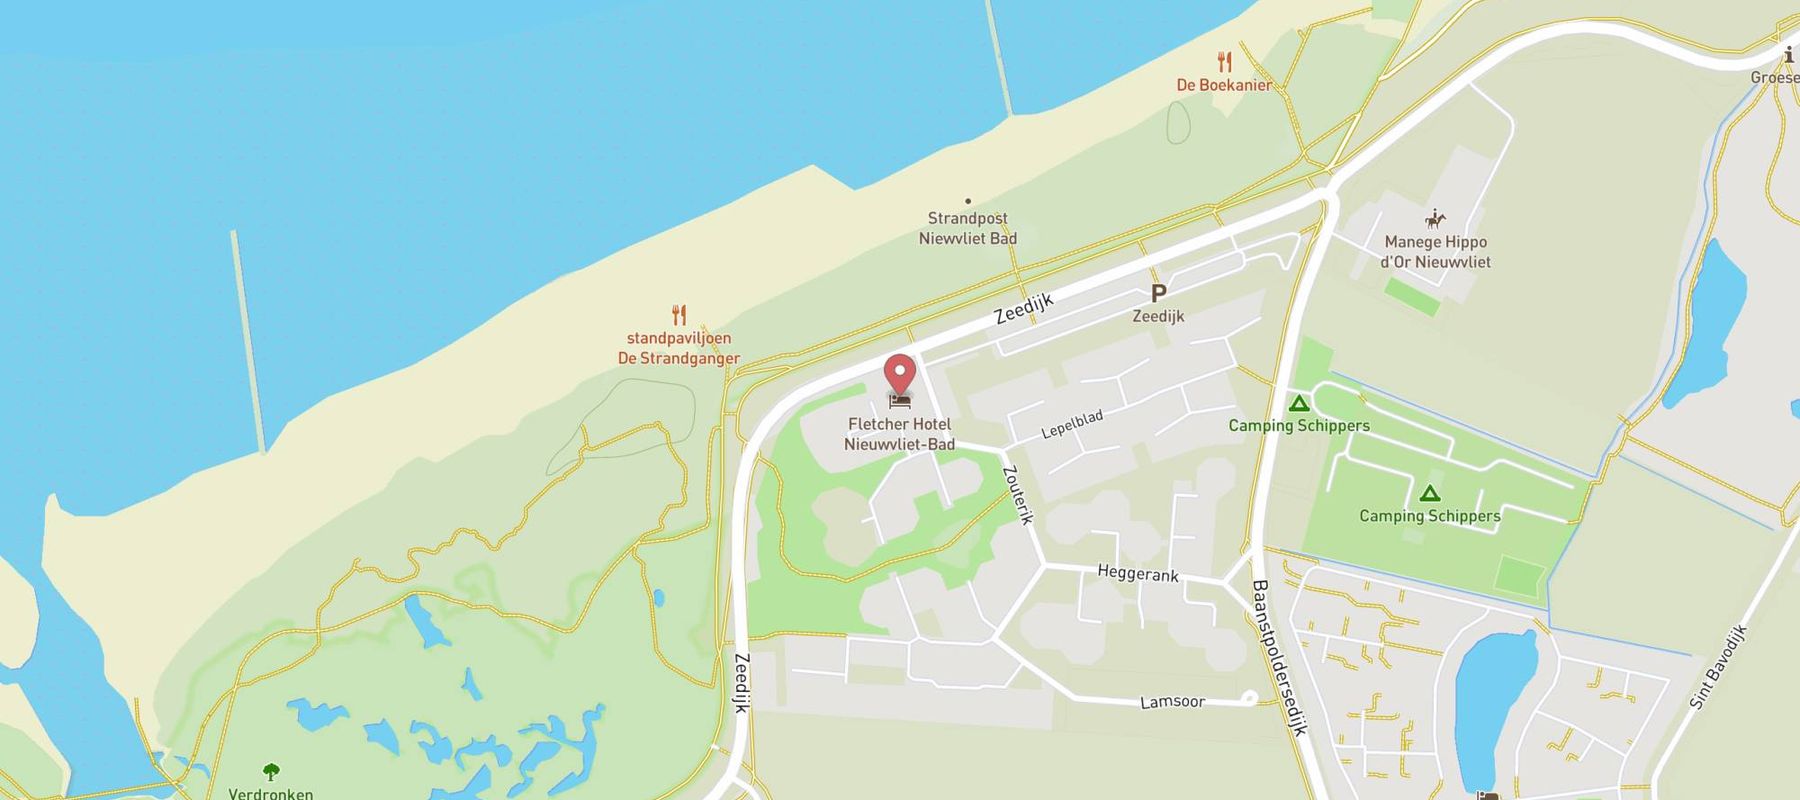 Fletcher Hotel Nieuwvliet-Bad map